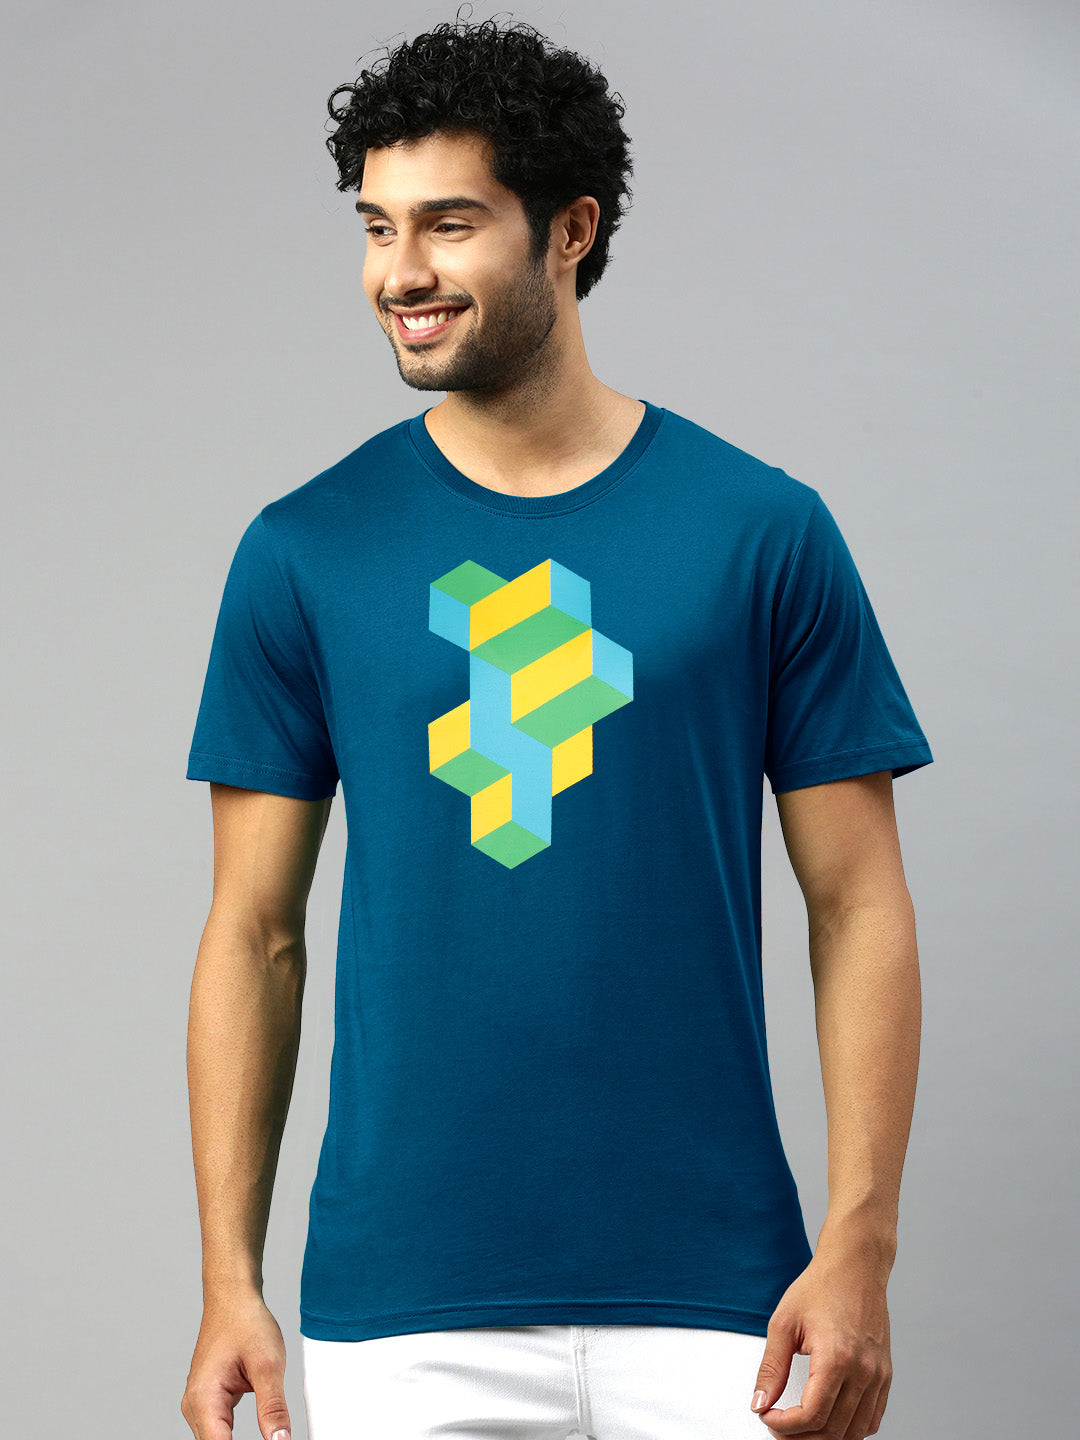 Best Men's T-Shirts in India, Buy Online